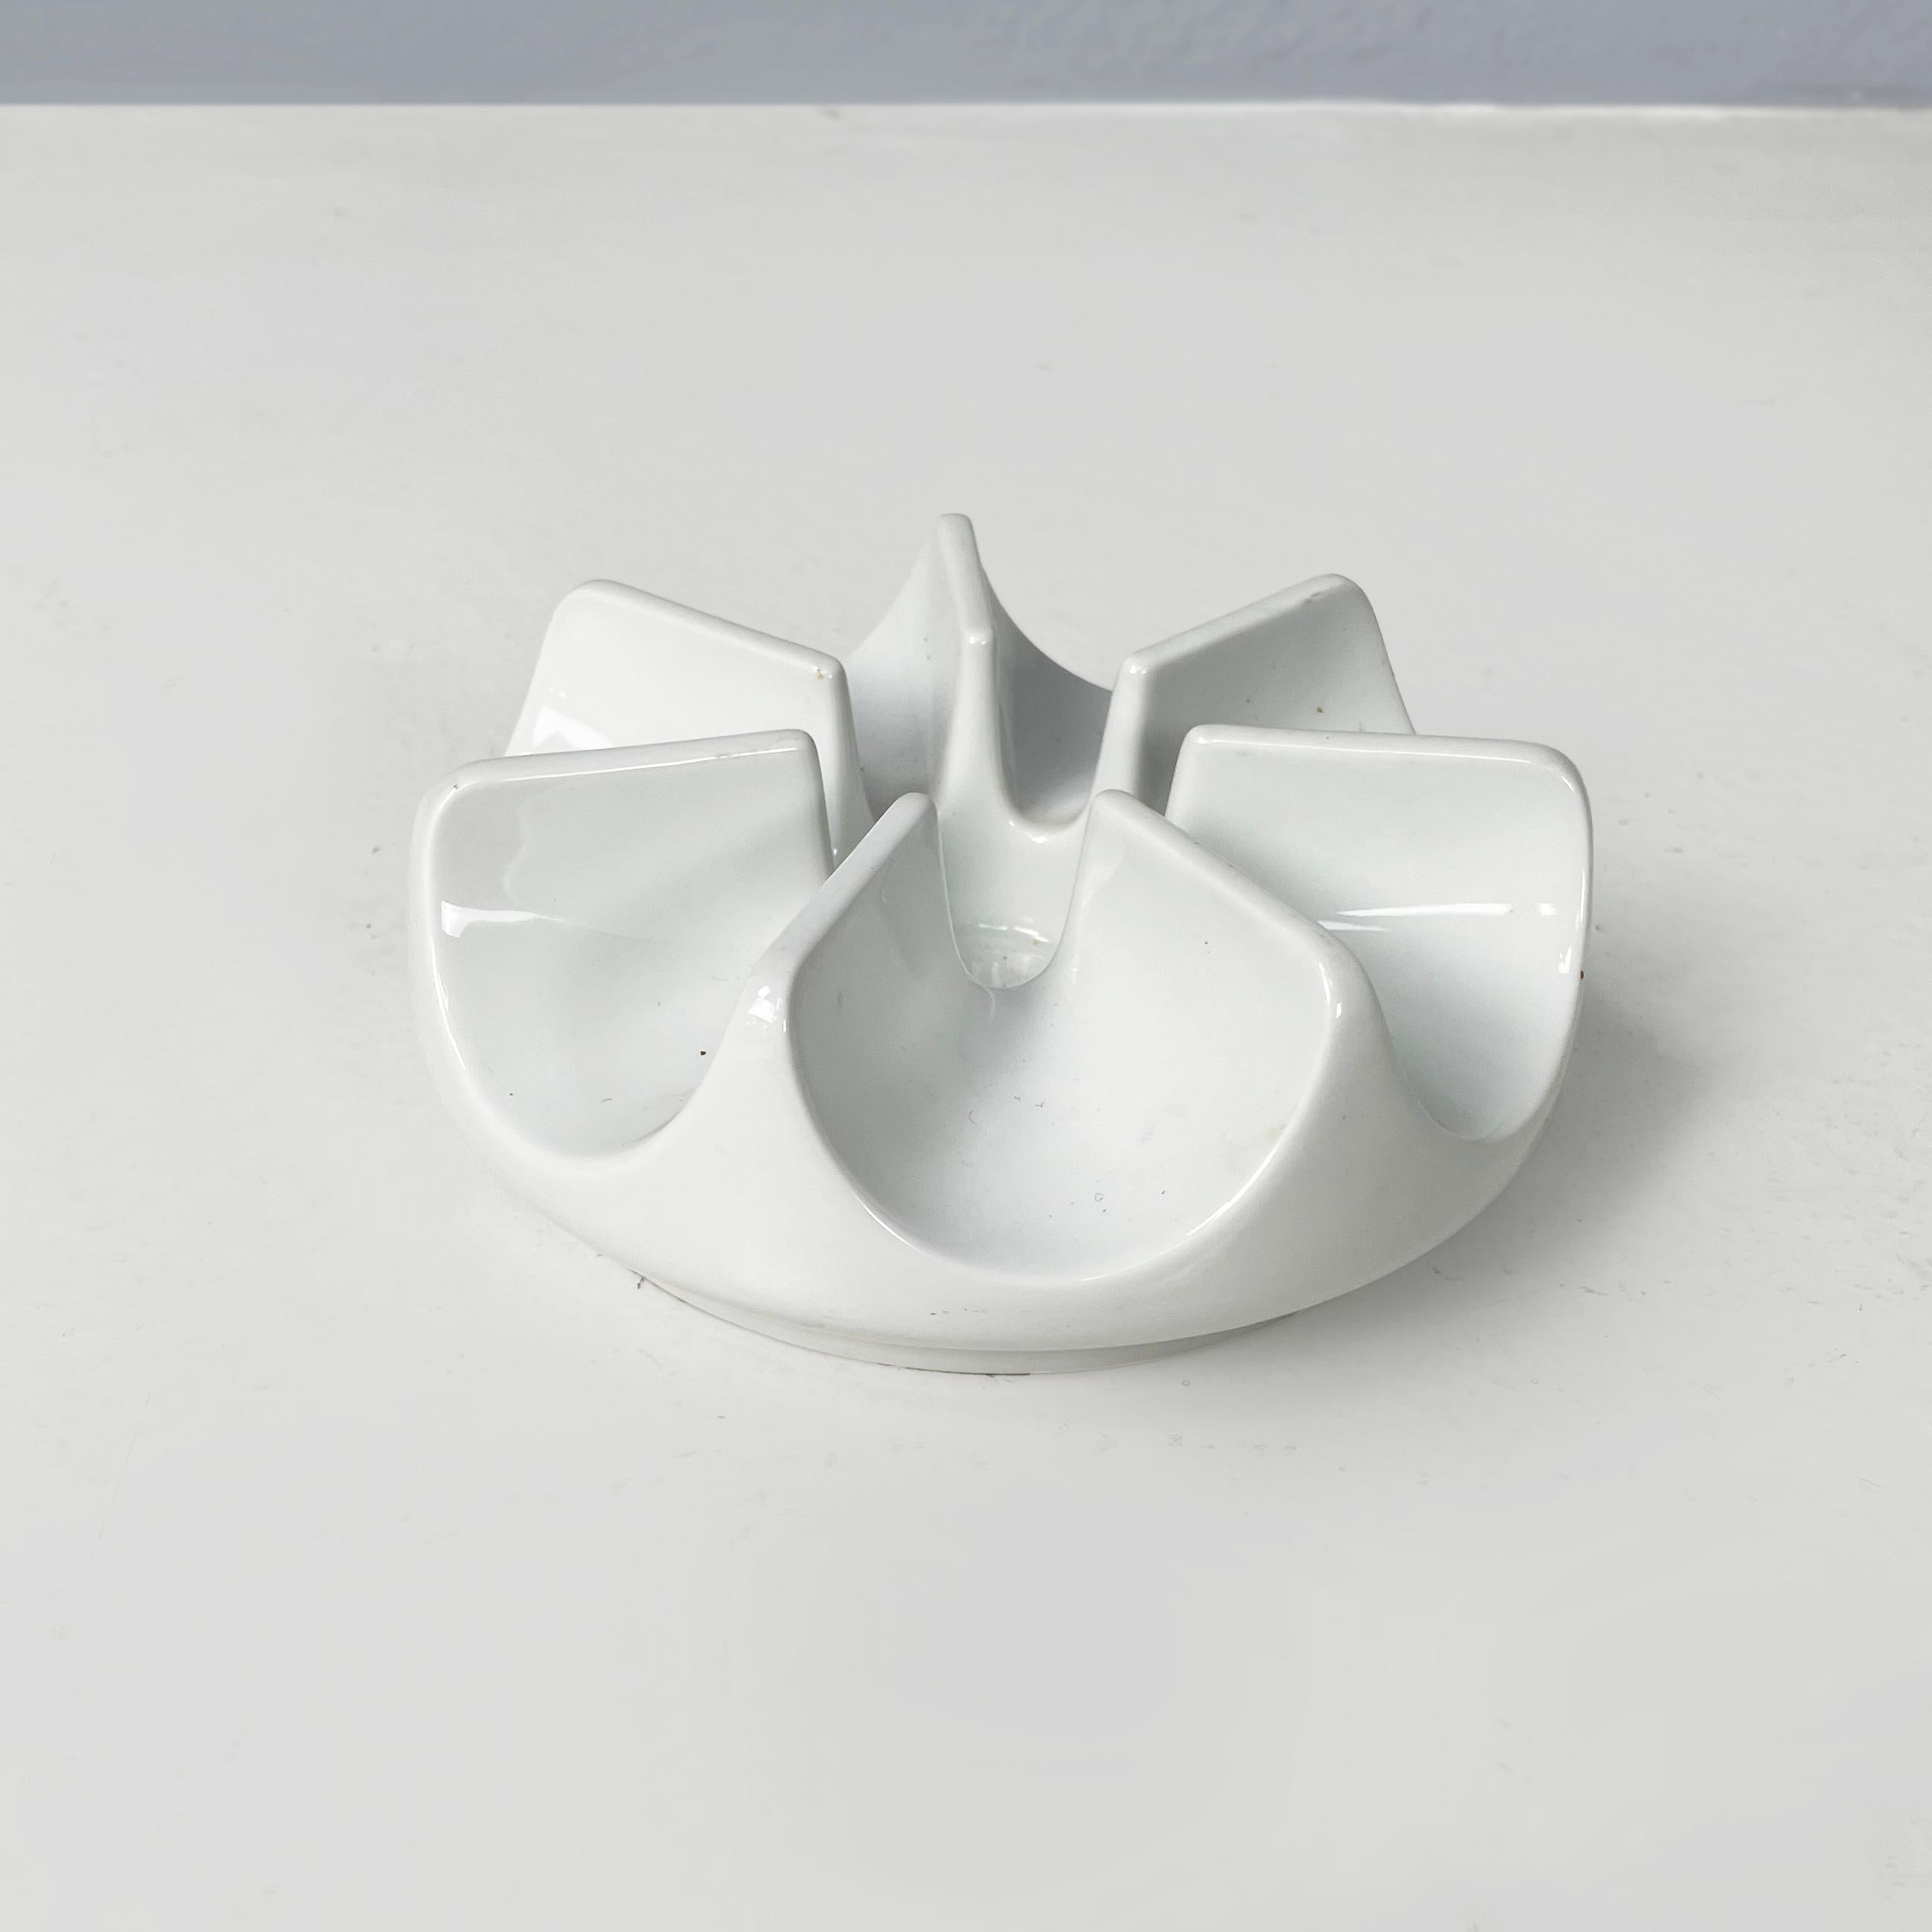 Chauffe-théière rond en céramique allemand du milieu du siècle dernier par Arzberg, 1960s
Chauffe-théière à base ronde en céramique blanche. Au centre, il y a un trou rond dans lequel on peut insérer une petite bougie. Le trou est entouré de stries